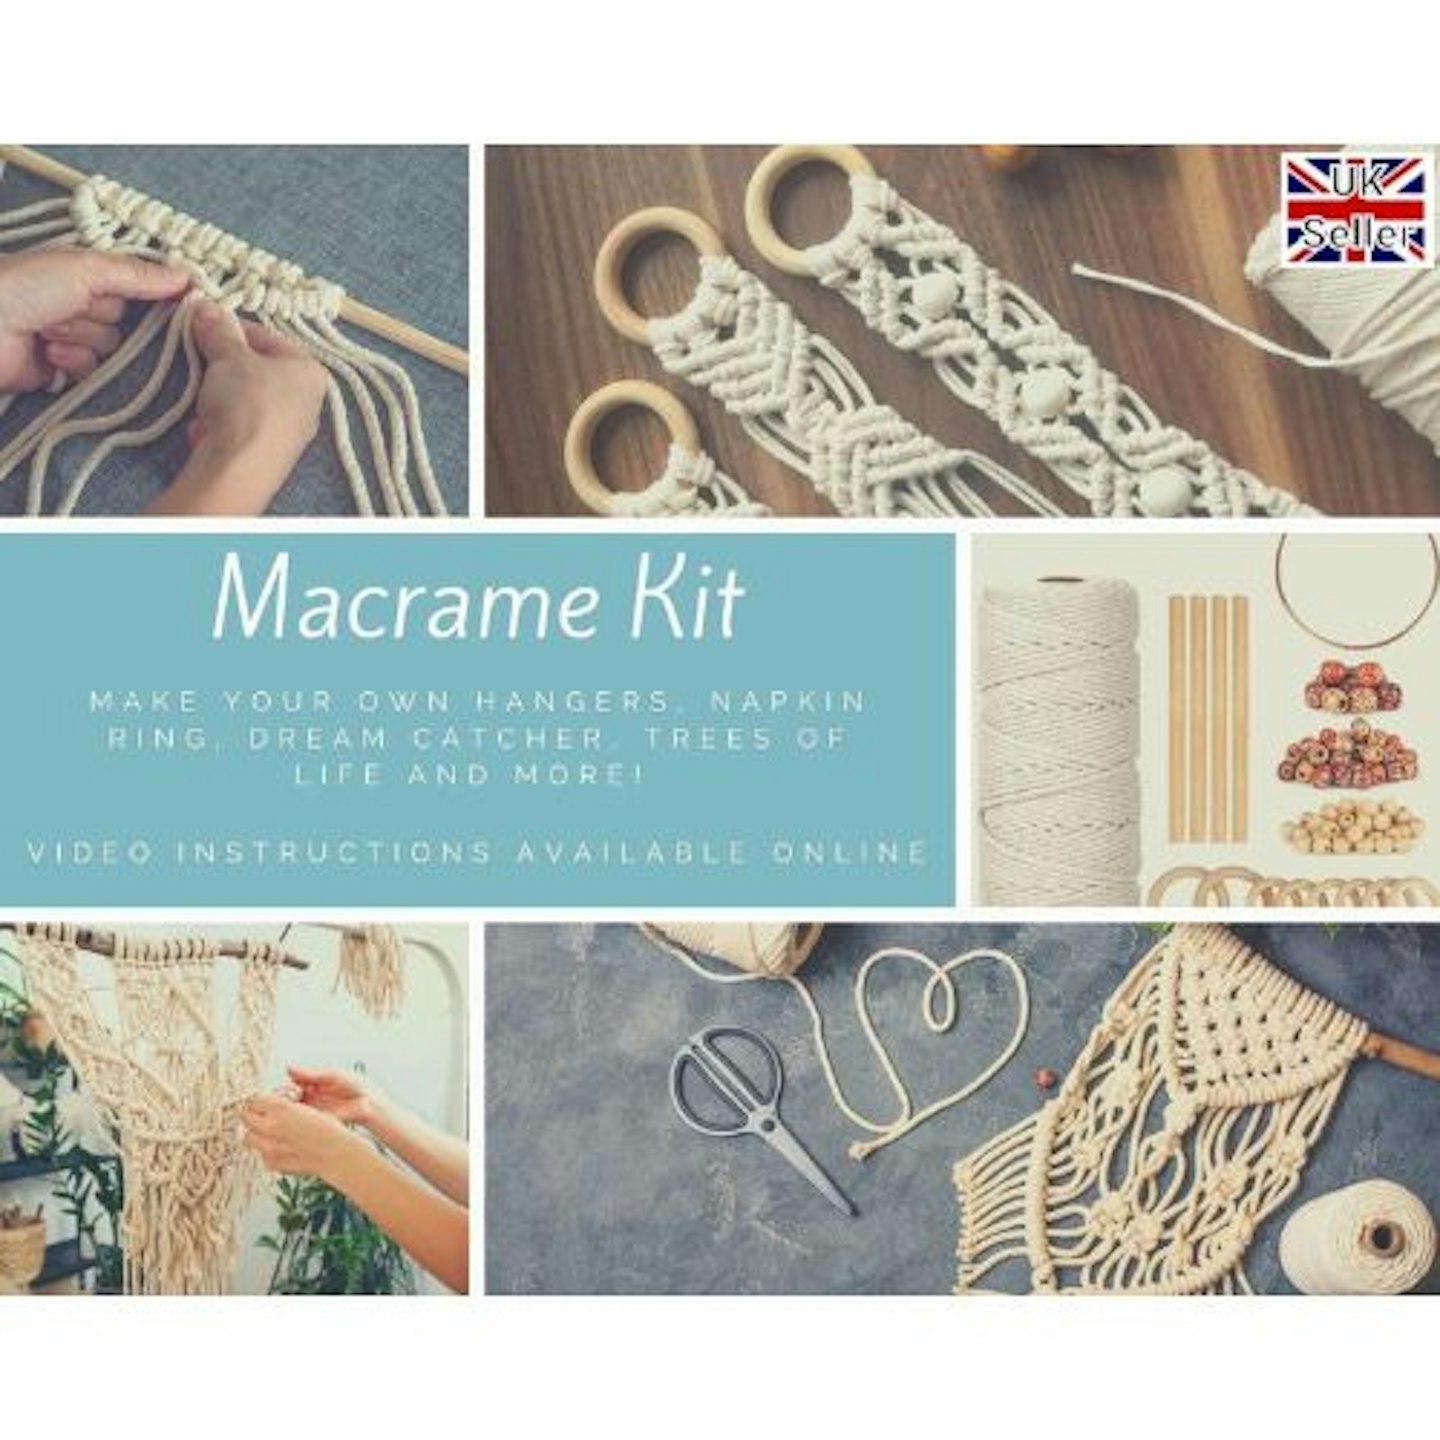 The Ring Macrame Kit